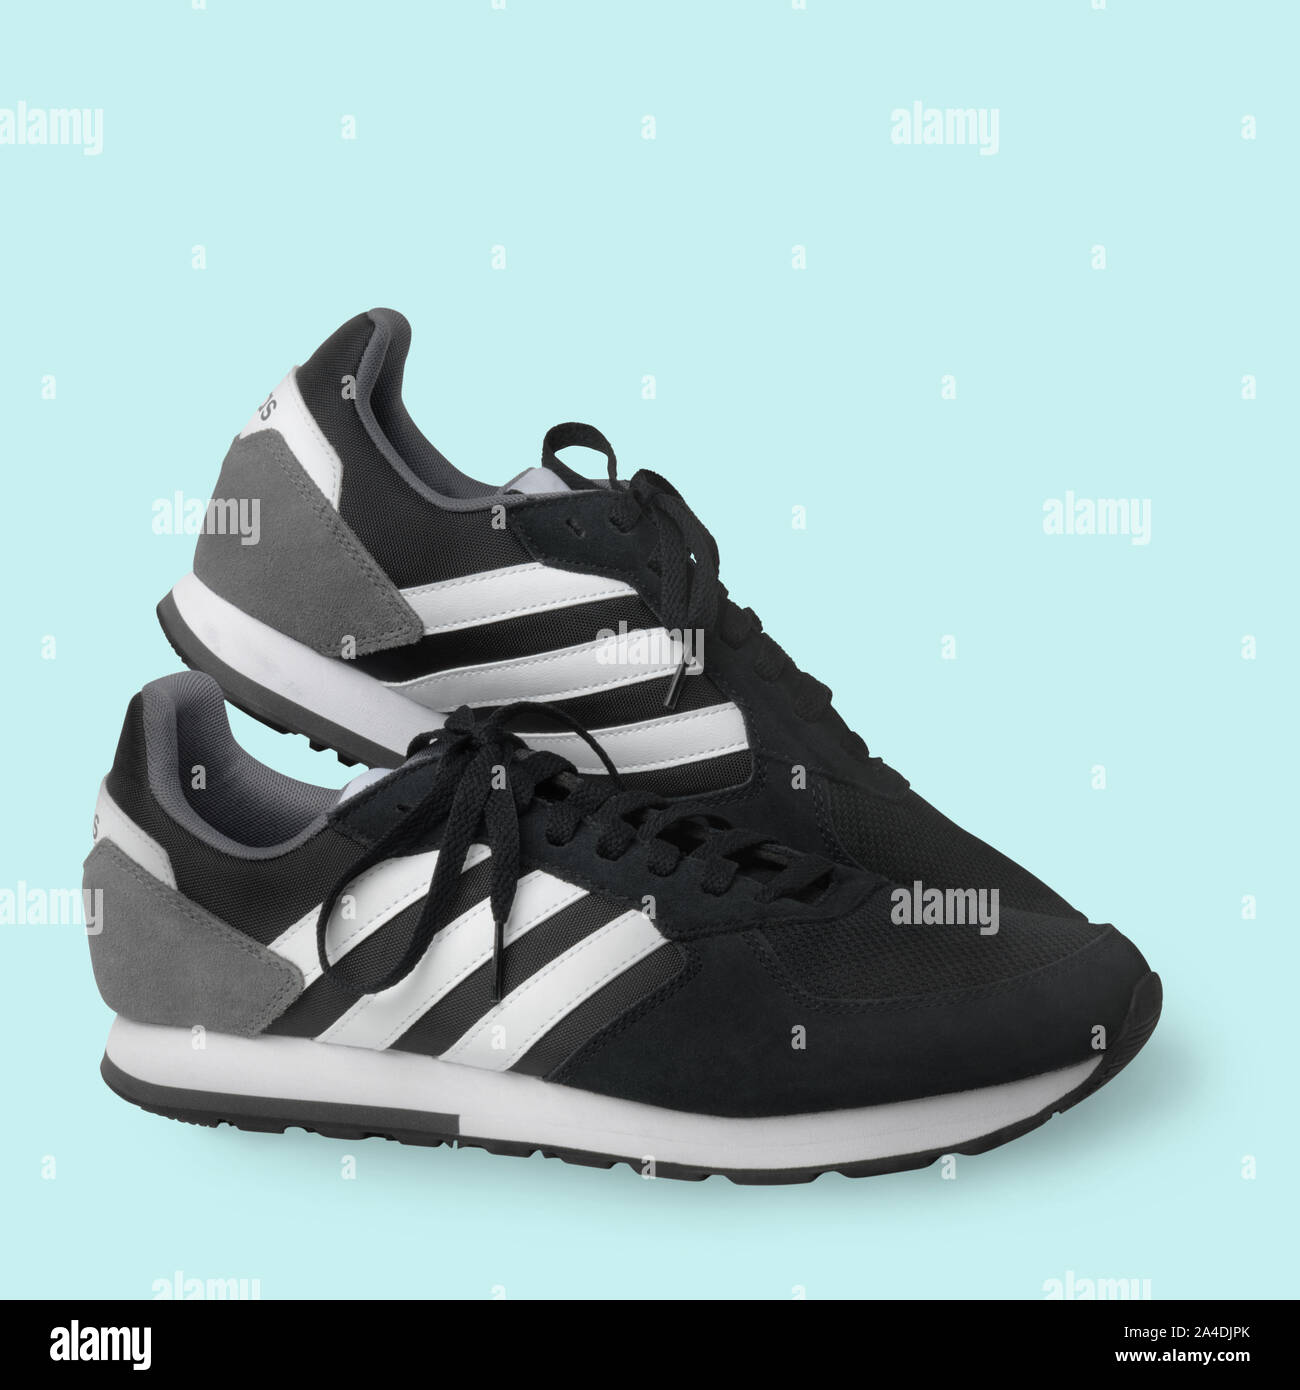 Adidas scarpe sportive sneakers nero su uno sfondo bianco. Isolato. Samara.  La Russia. 2019-04-13 Foto stock - Alamy